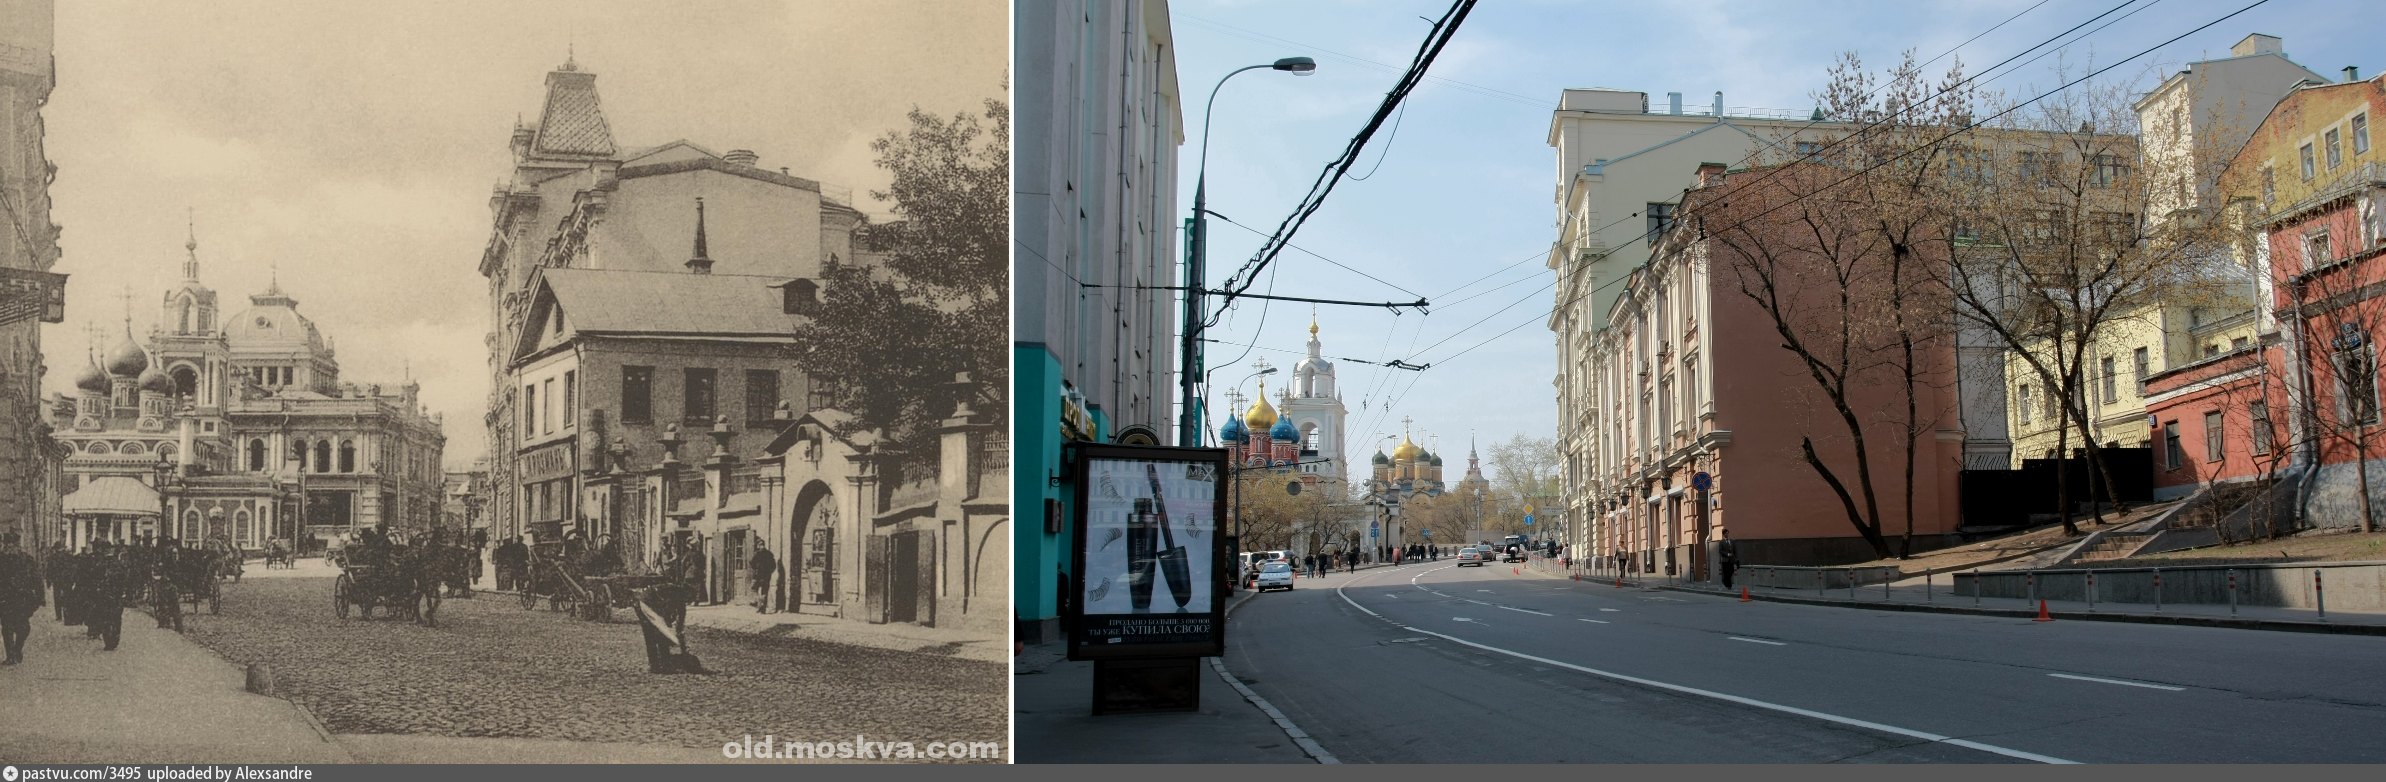 Сделай и подбери фотографии показывающие приметы старого и нового в твоем городе